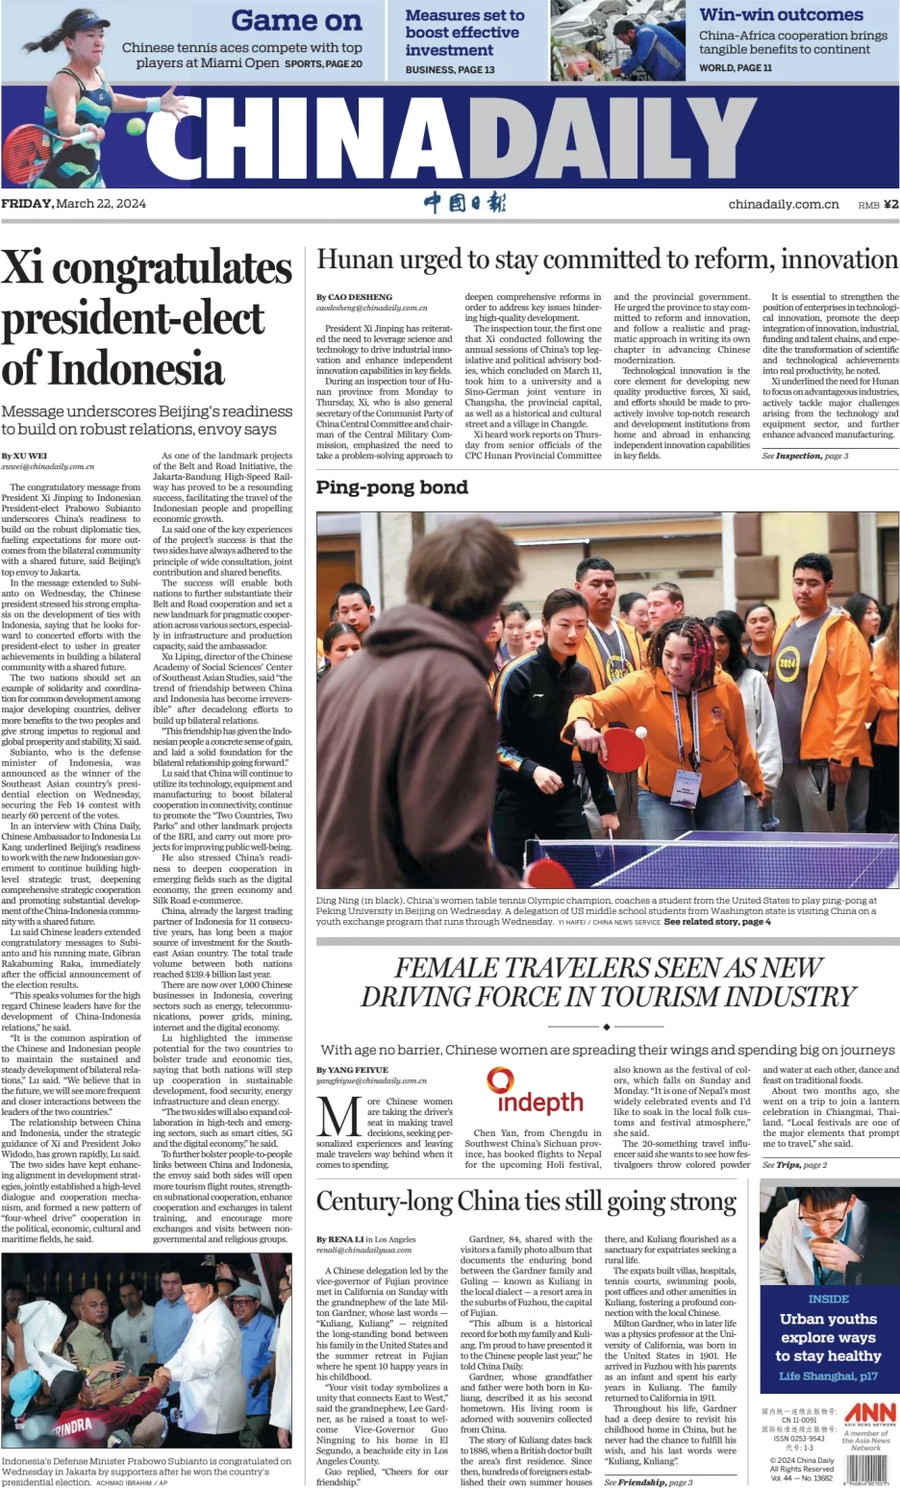 Anteprima prima pagina della rasegna stampa di ieri 2024-03-21 - china-daily/